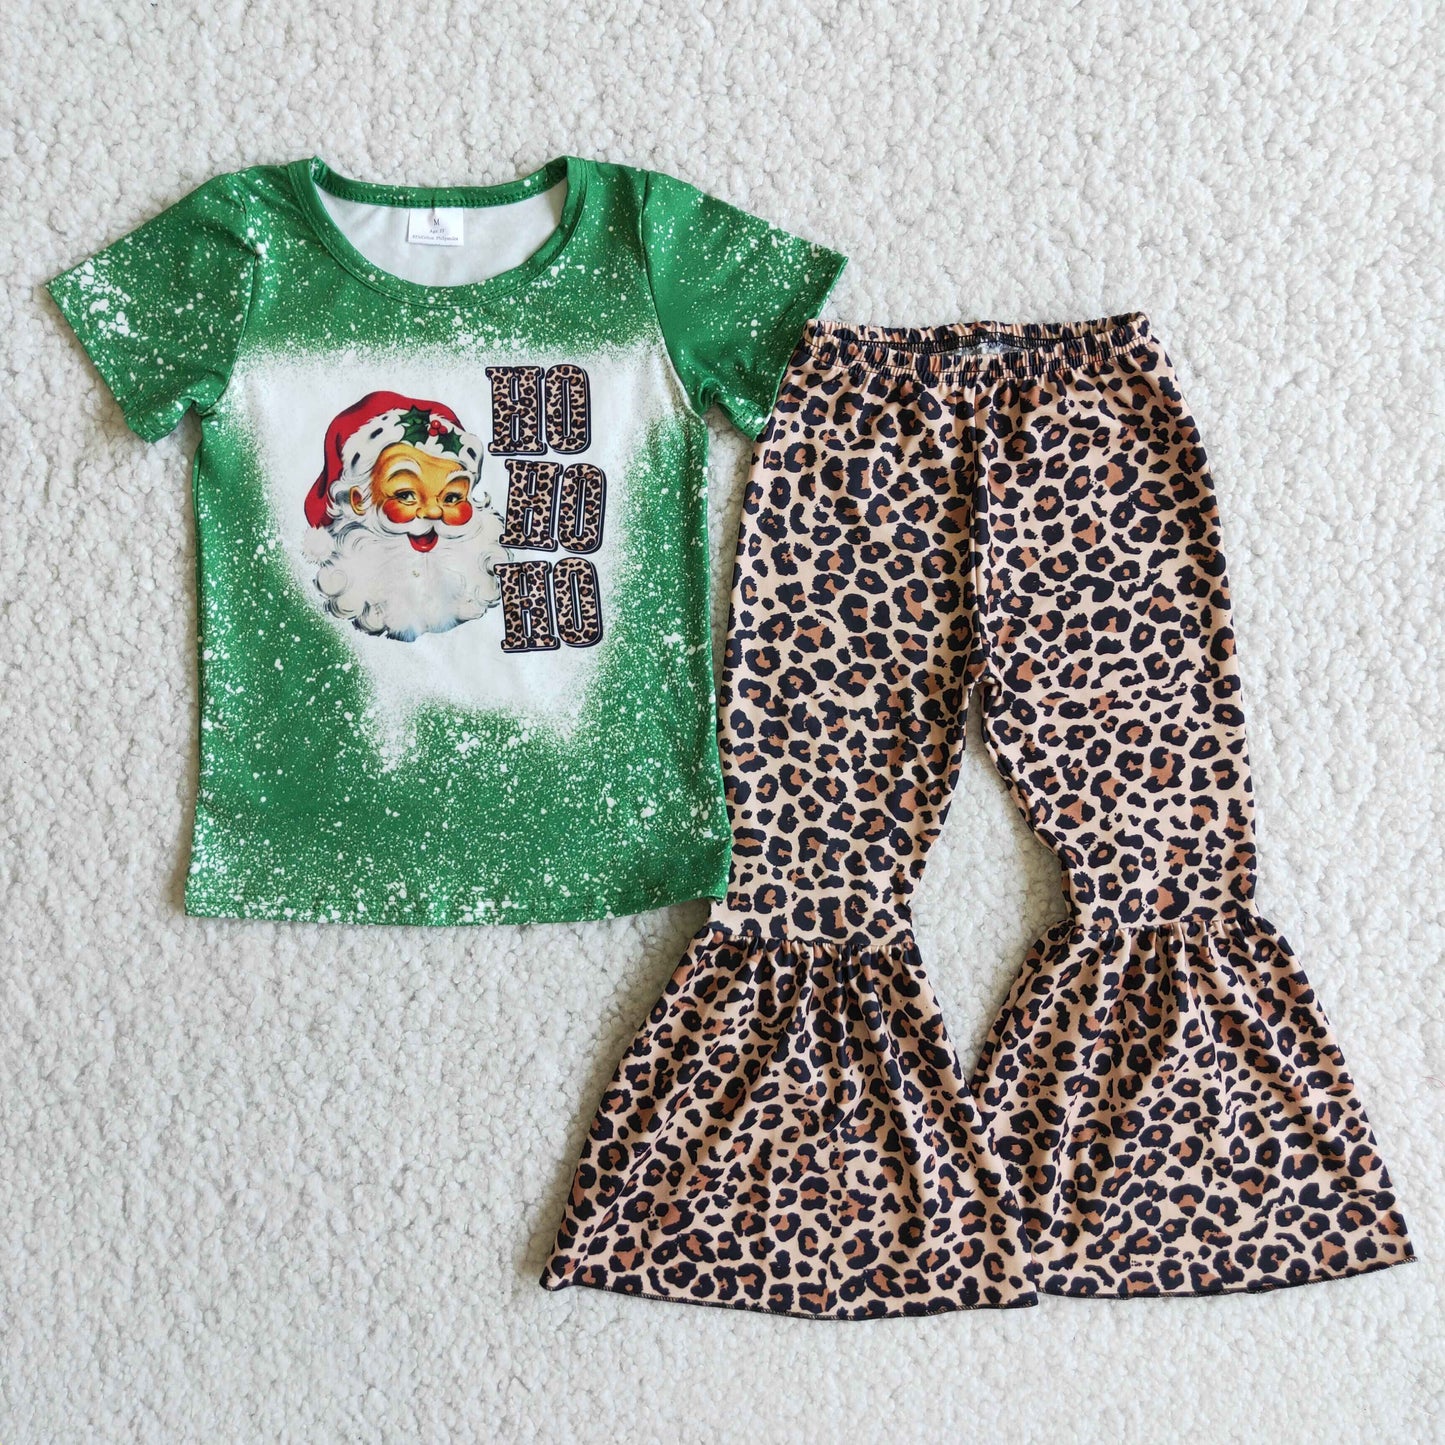 Ho Ho Ho santa print shirt leopard pants girls Christmas outfits